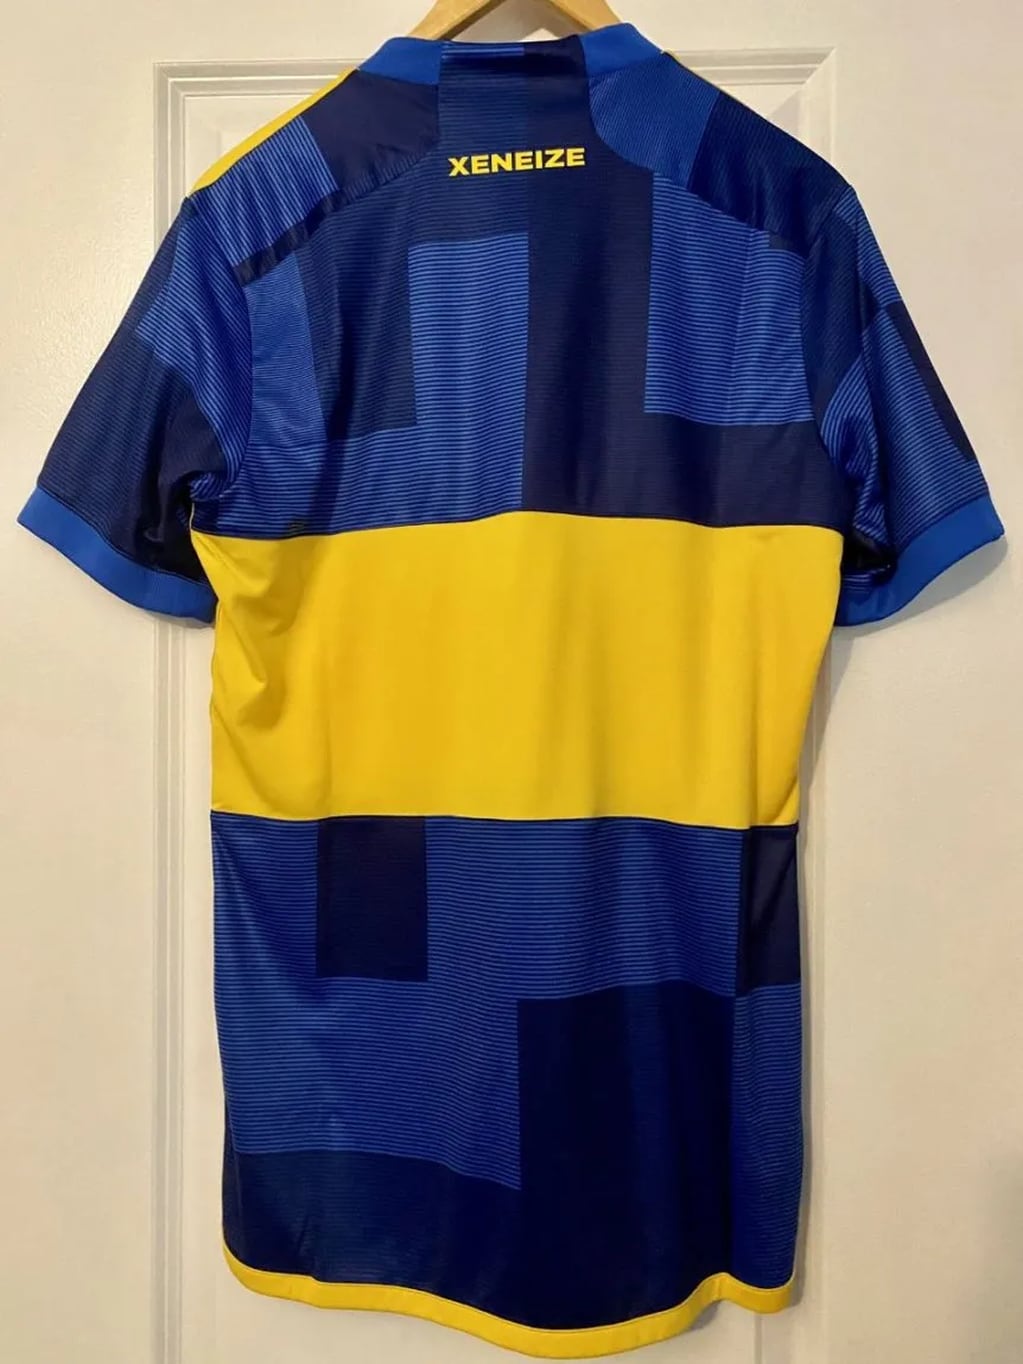 La posible nueva camiseta de Boca